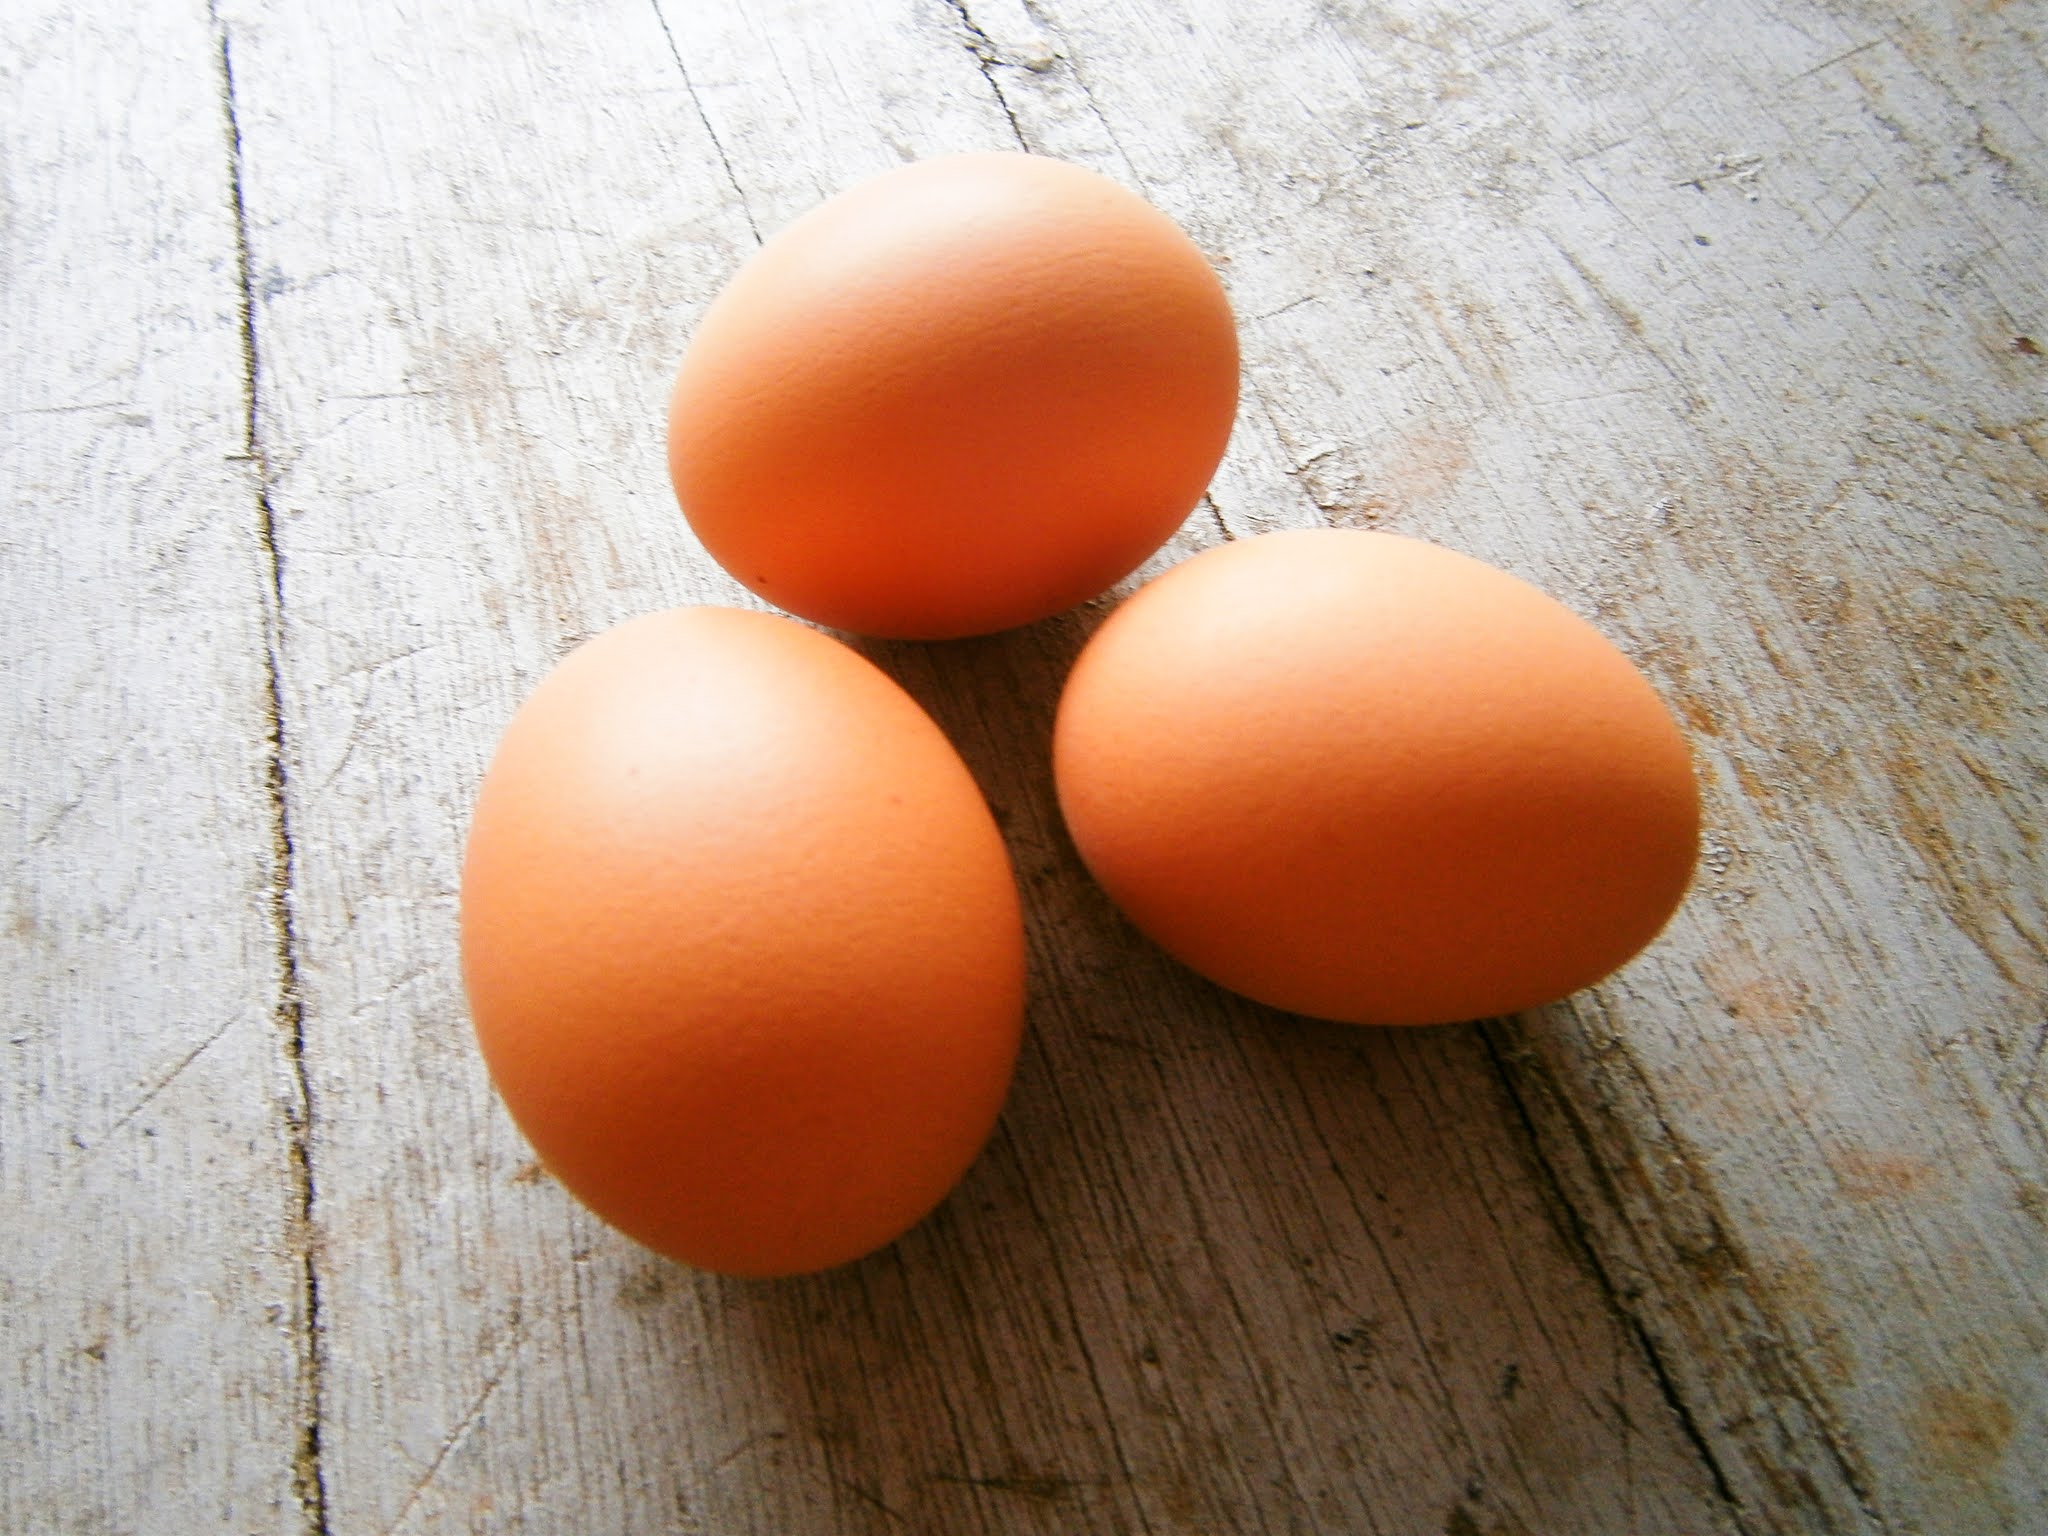 Huevos de gallina puestos sobre la superficie de una madera de color plomo